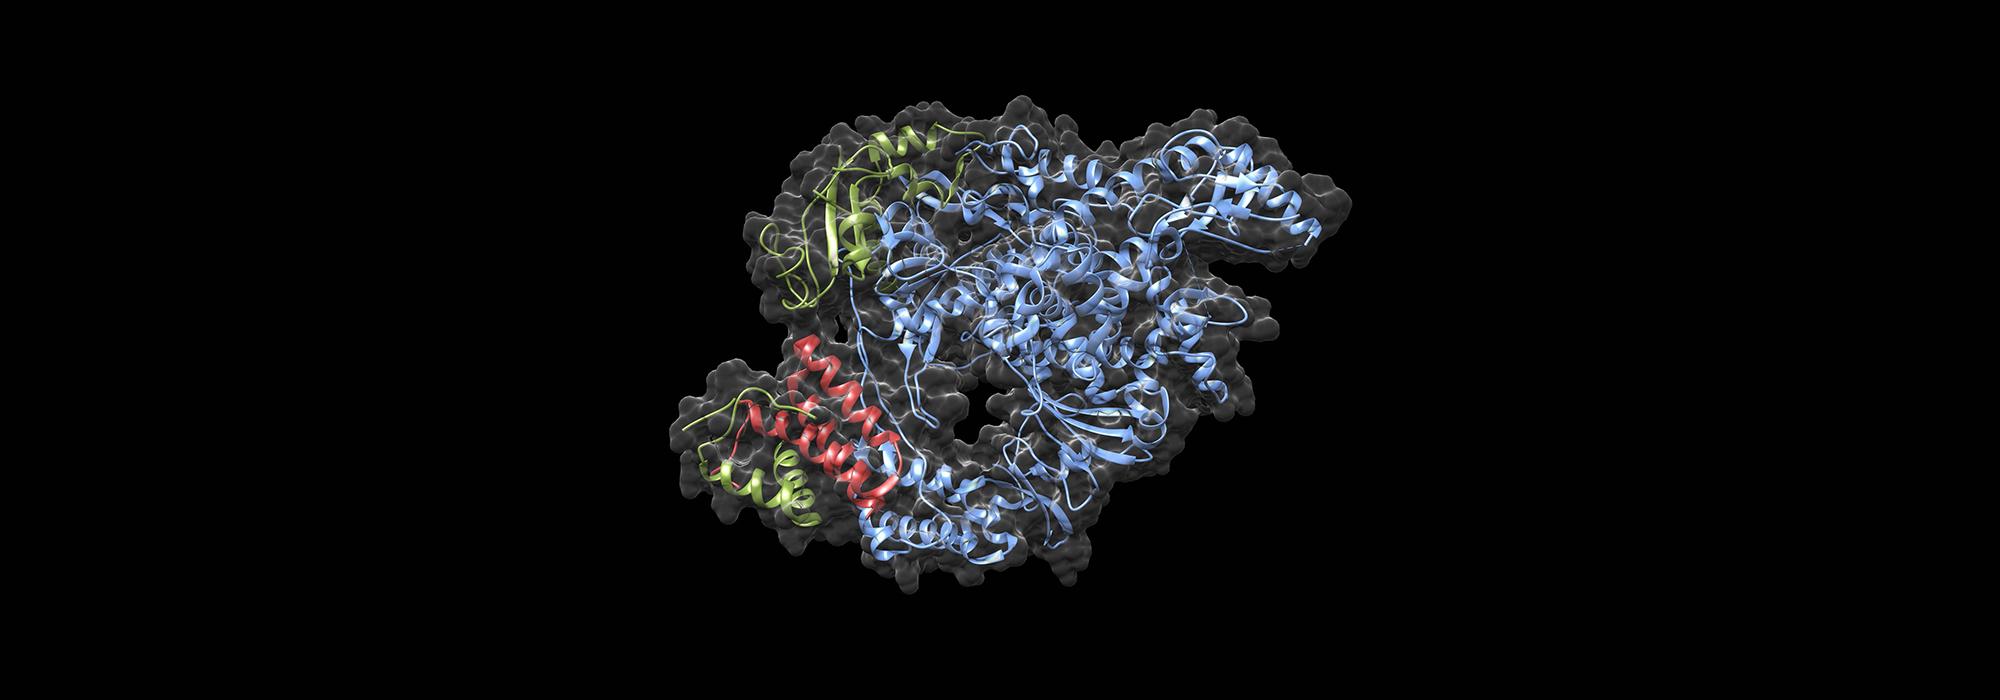 SARS-CoV-2 RNA polymerase complex